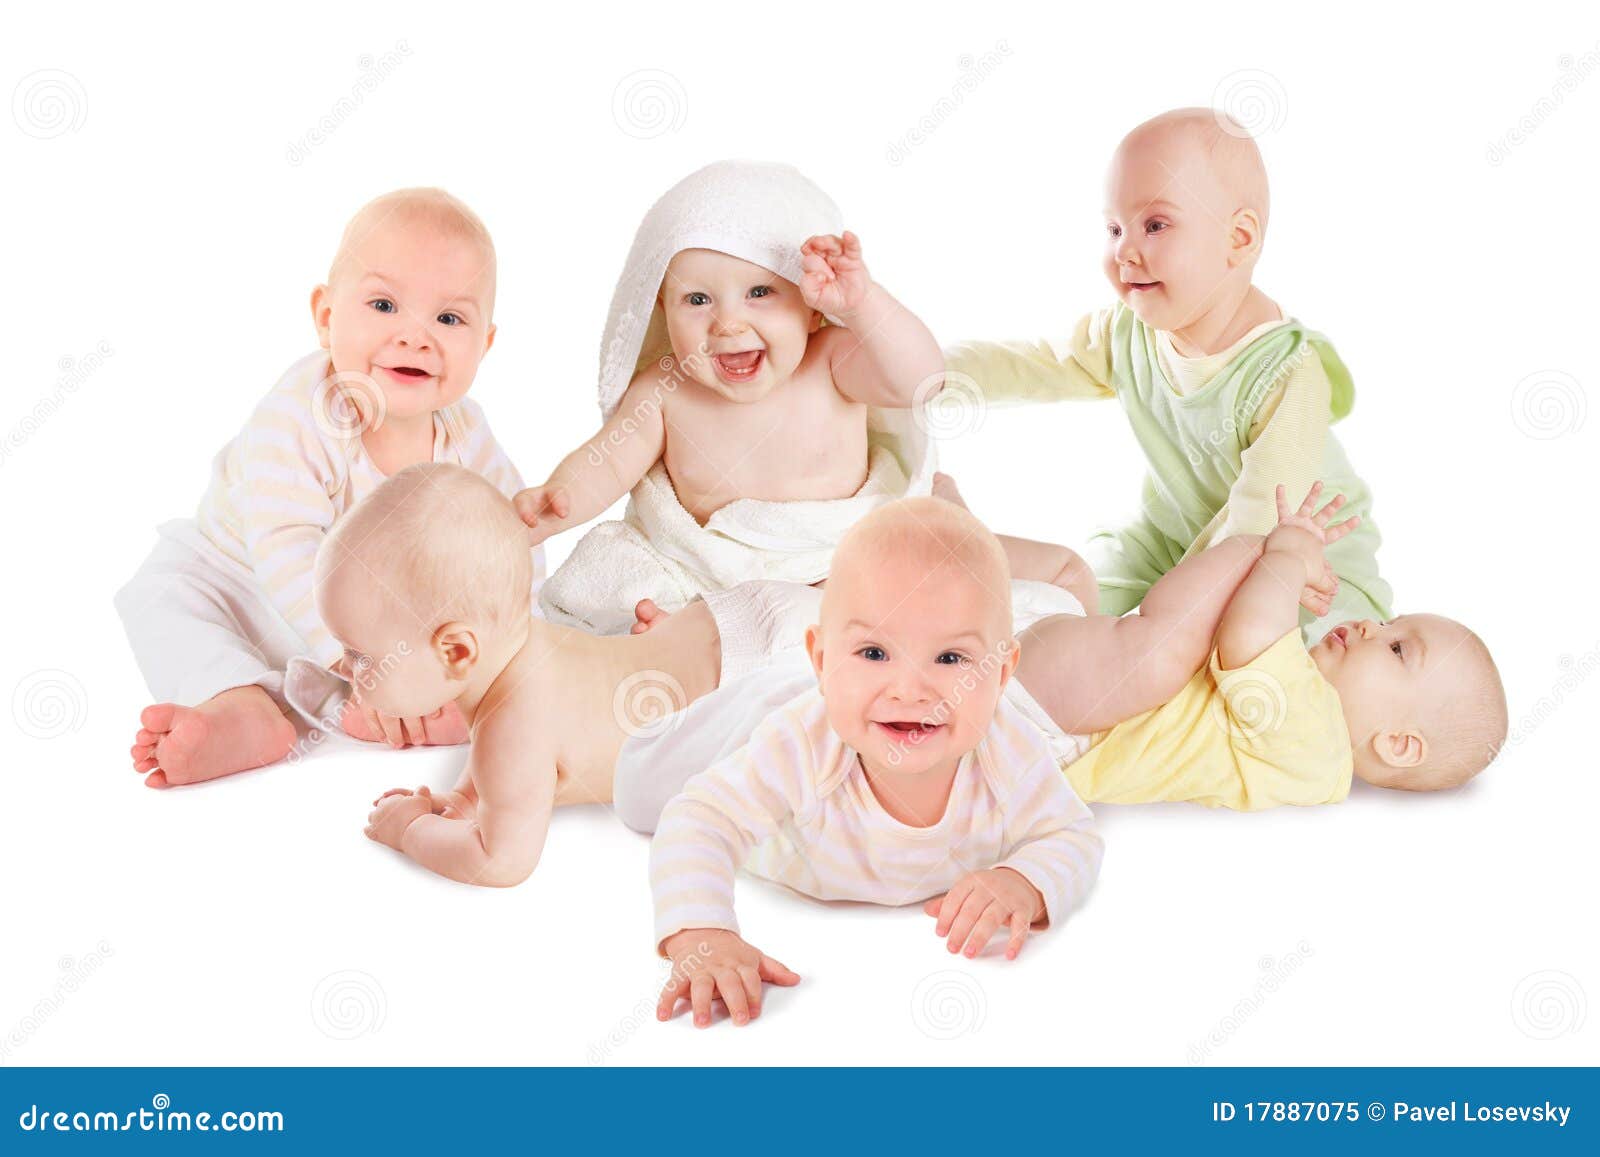 many joyful smiling babies